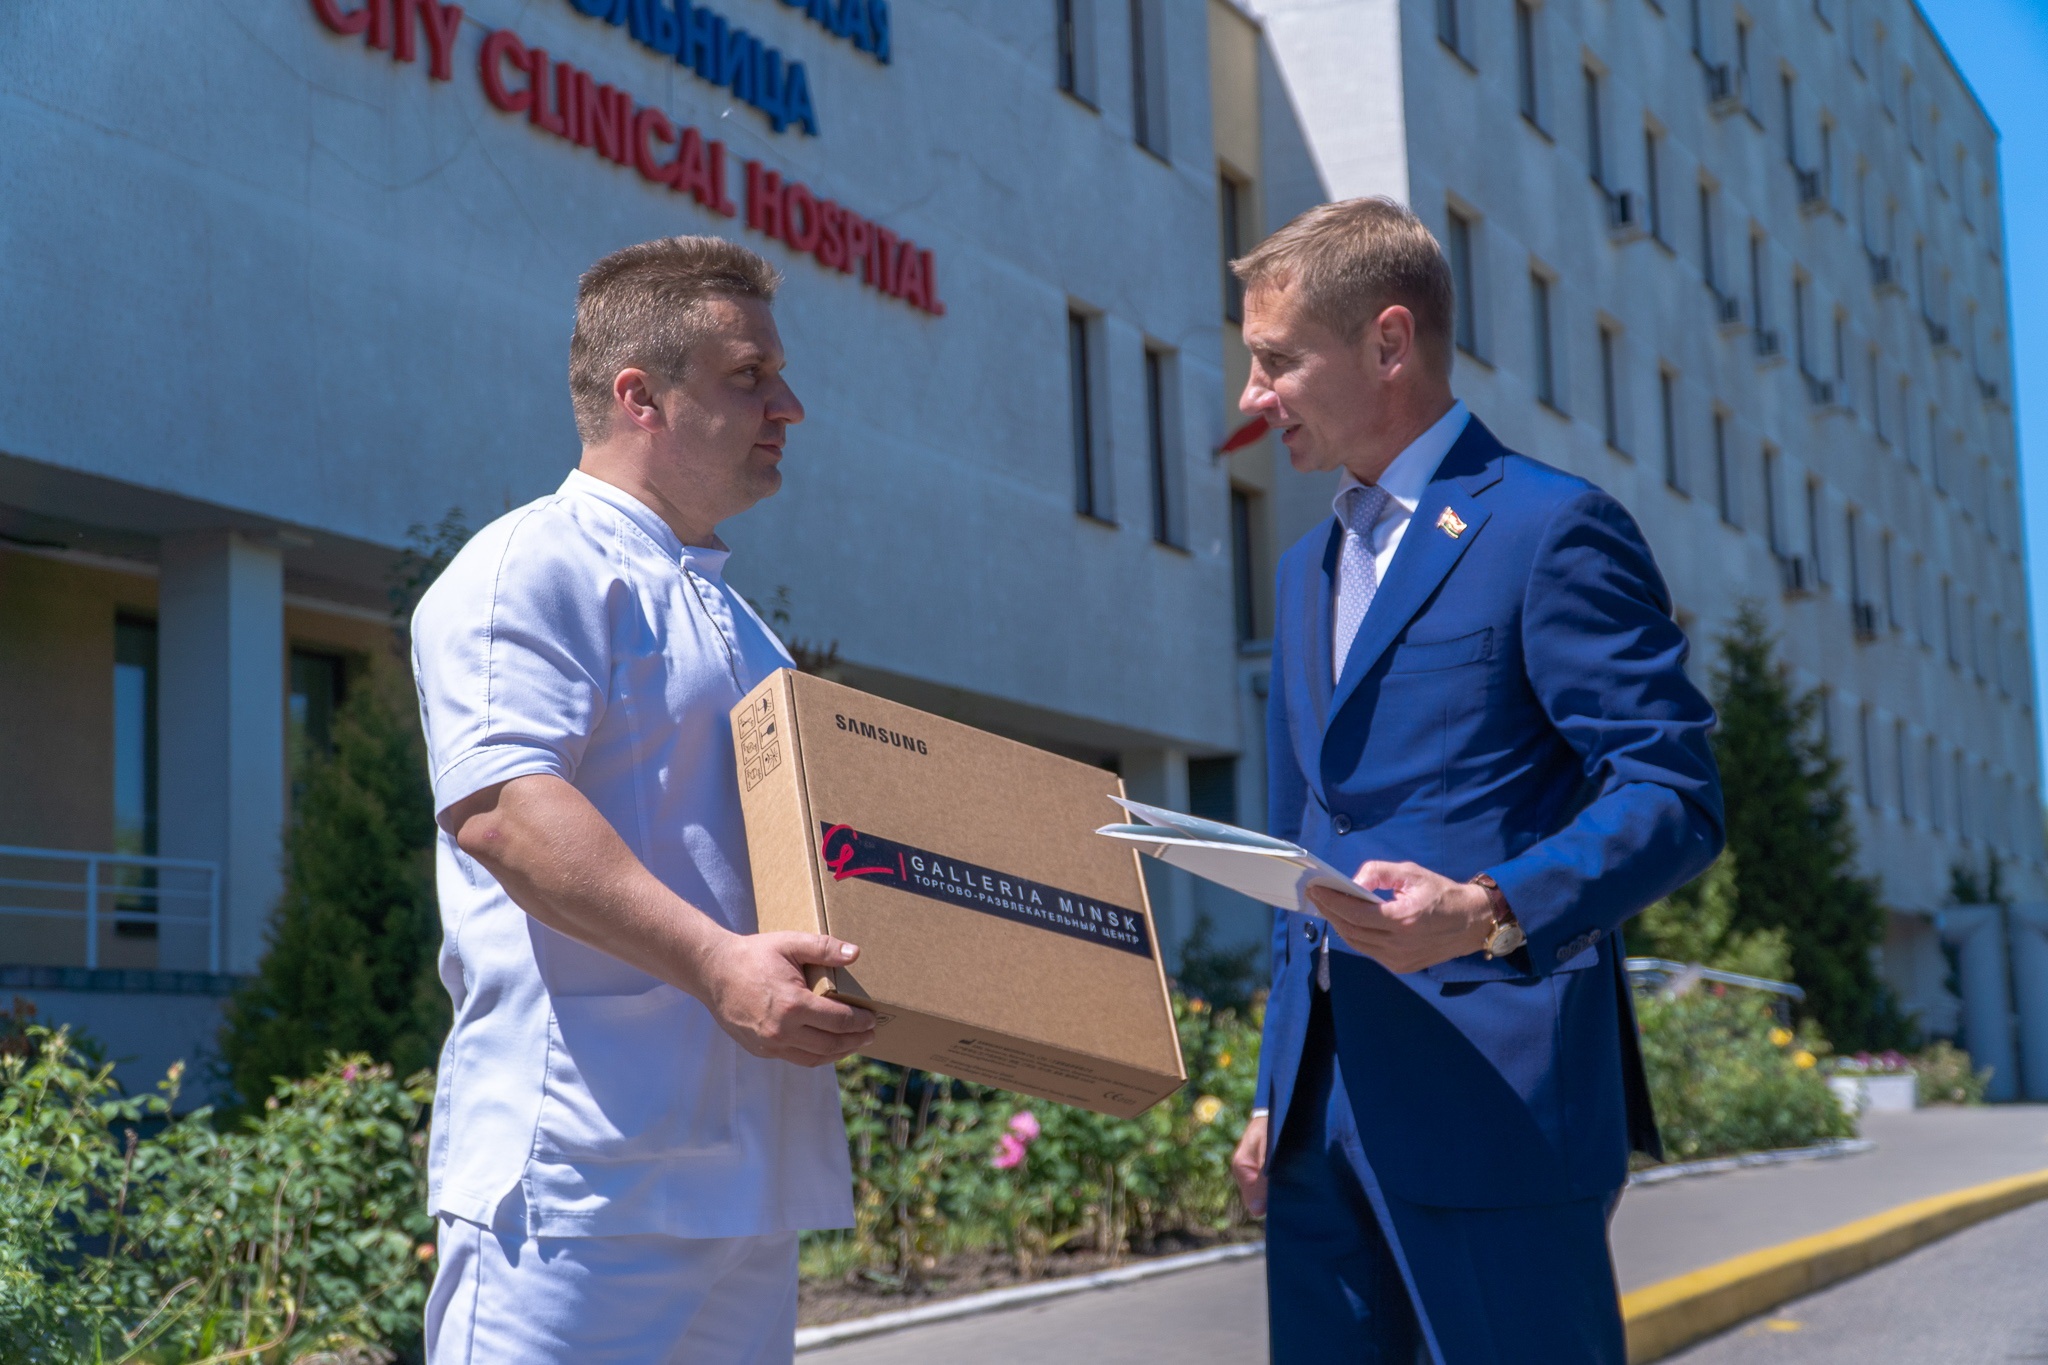 ТРЦ Galleria Minsk поздравил медиков и помог минской больнице